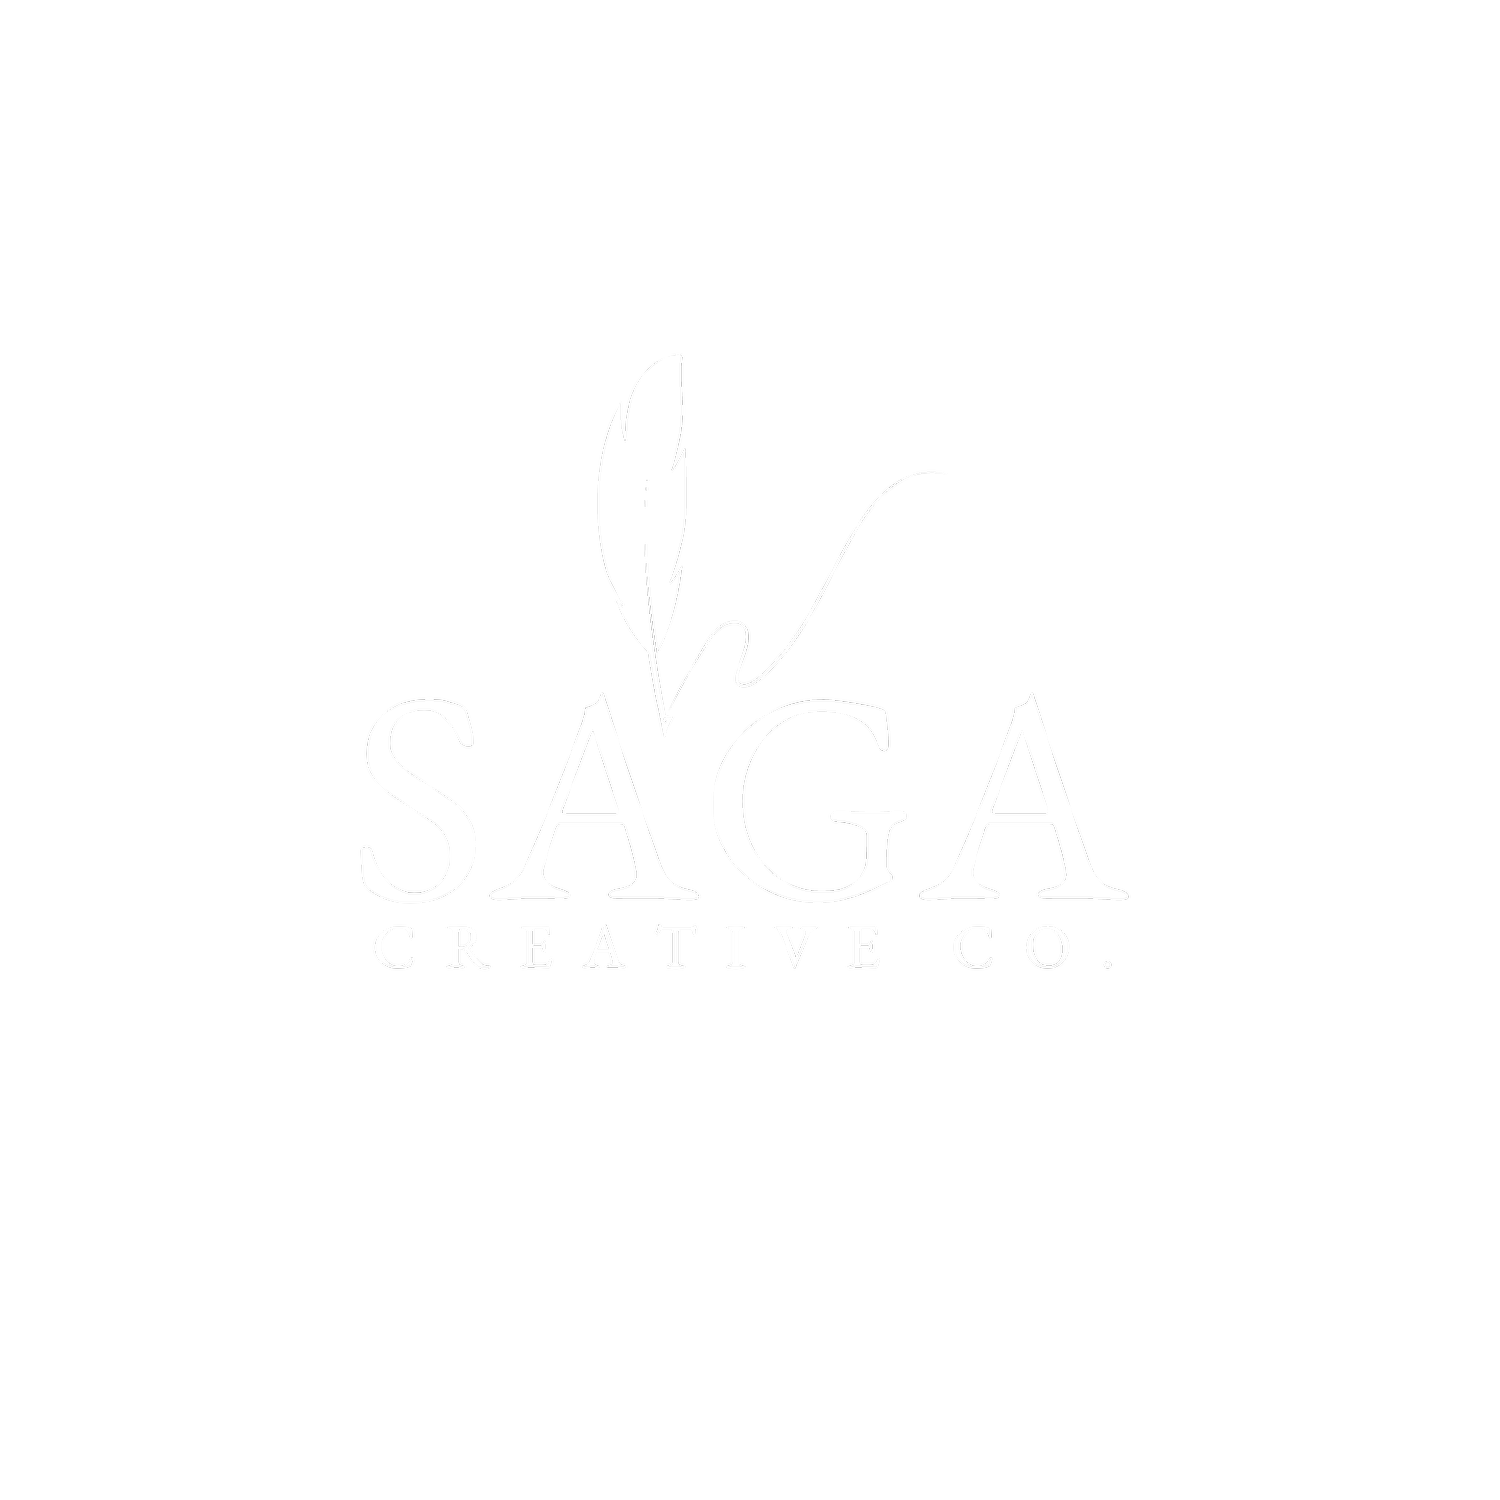 Saga Creative Co